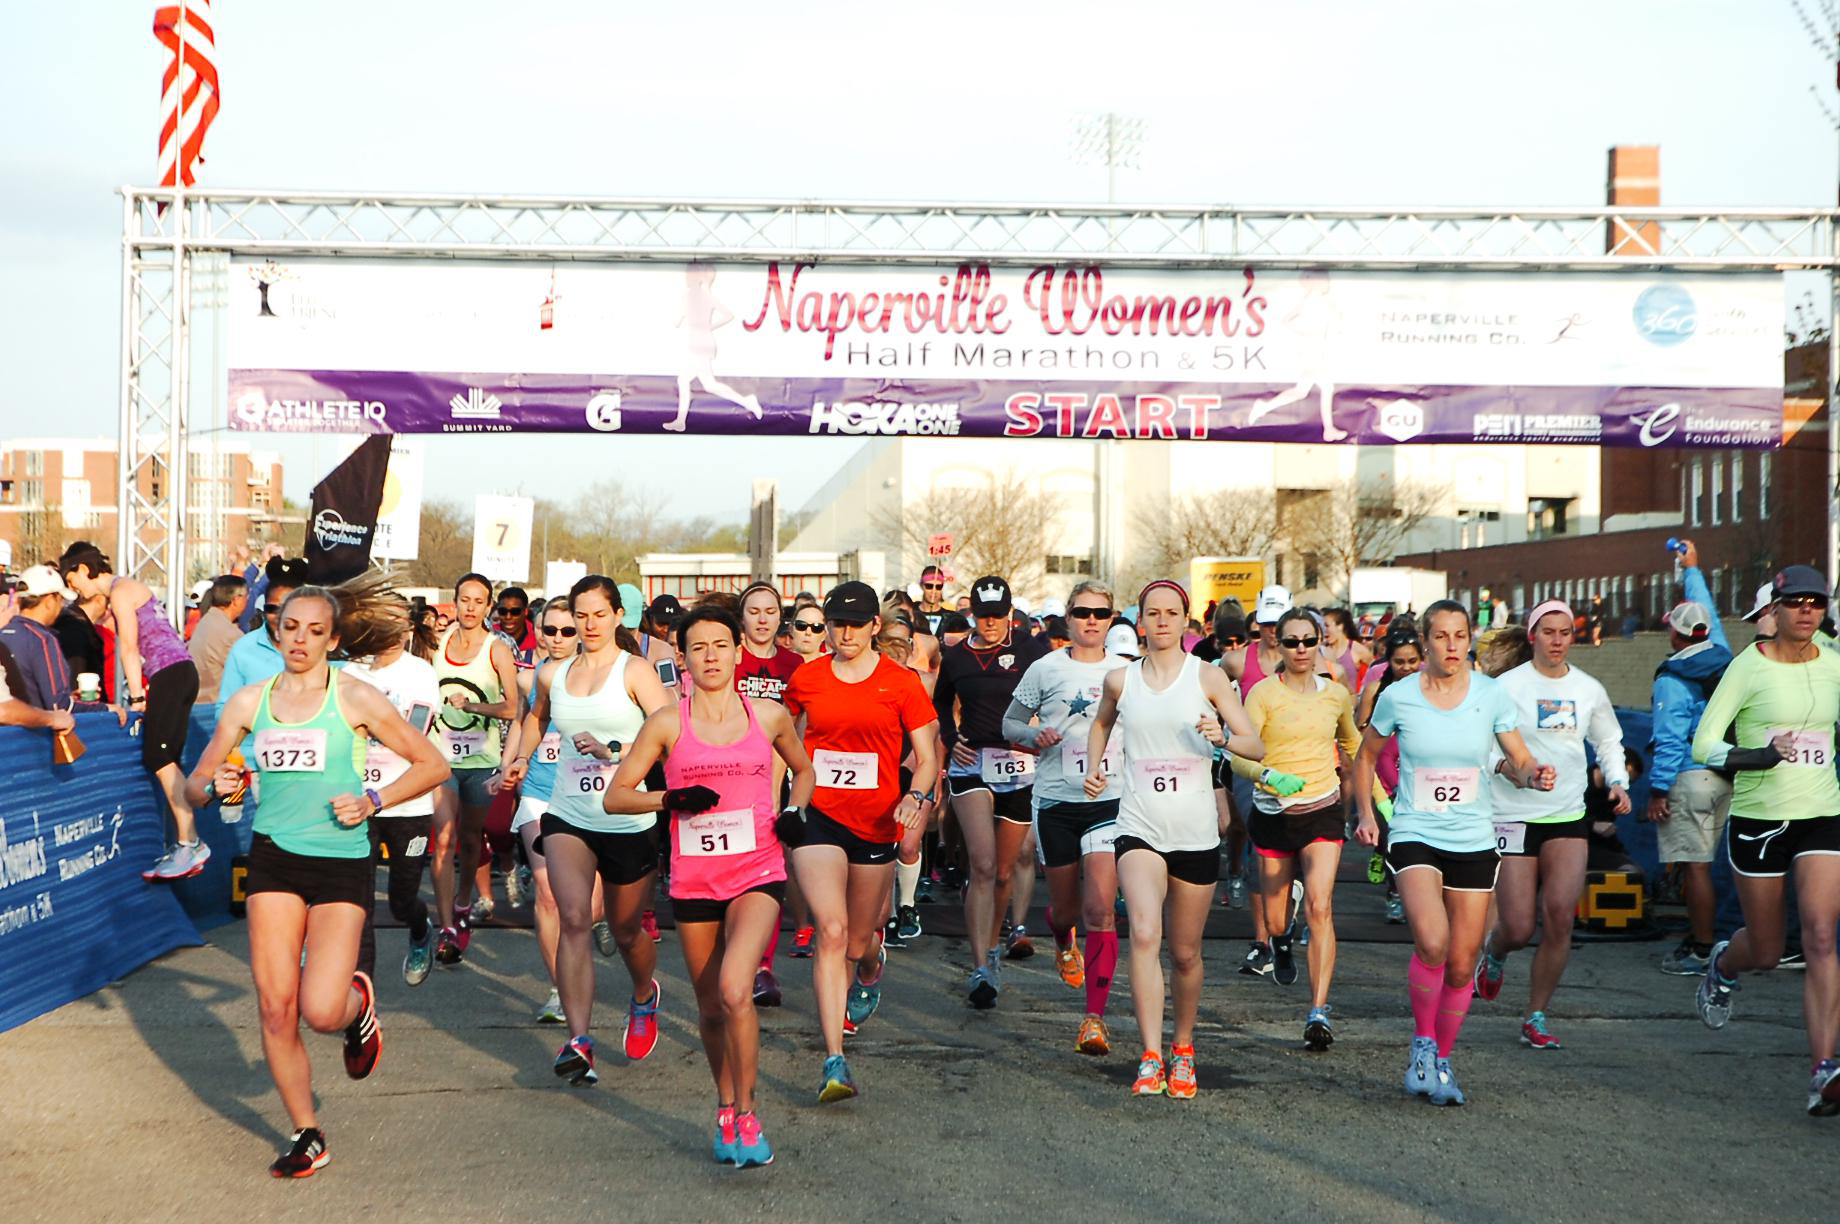 The Naperville Women's Half Marathon & 5K Event Website is Open ...